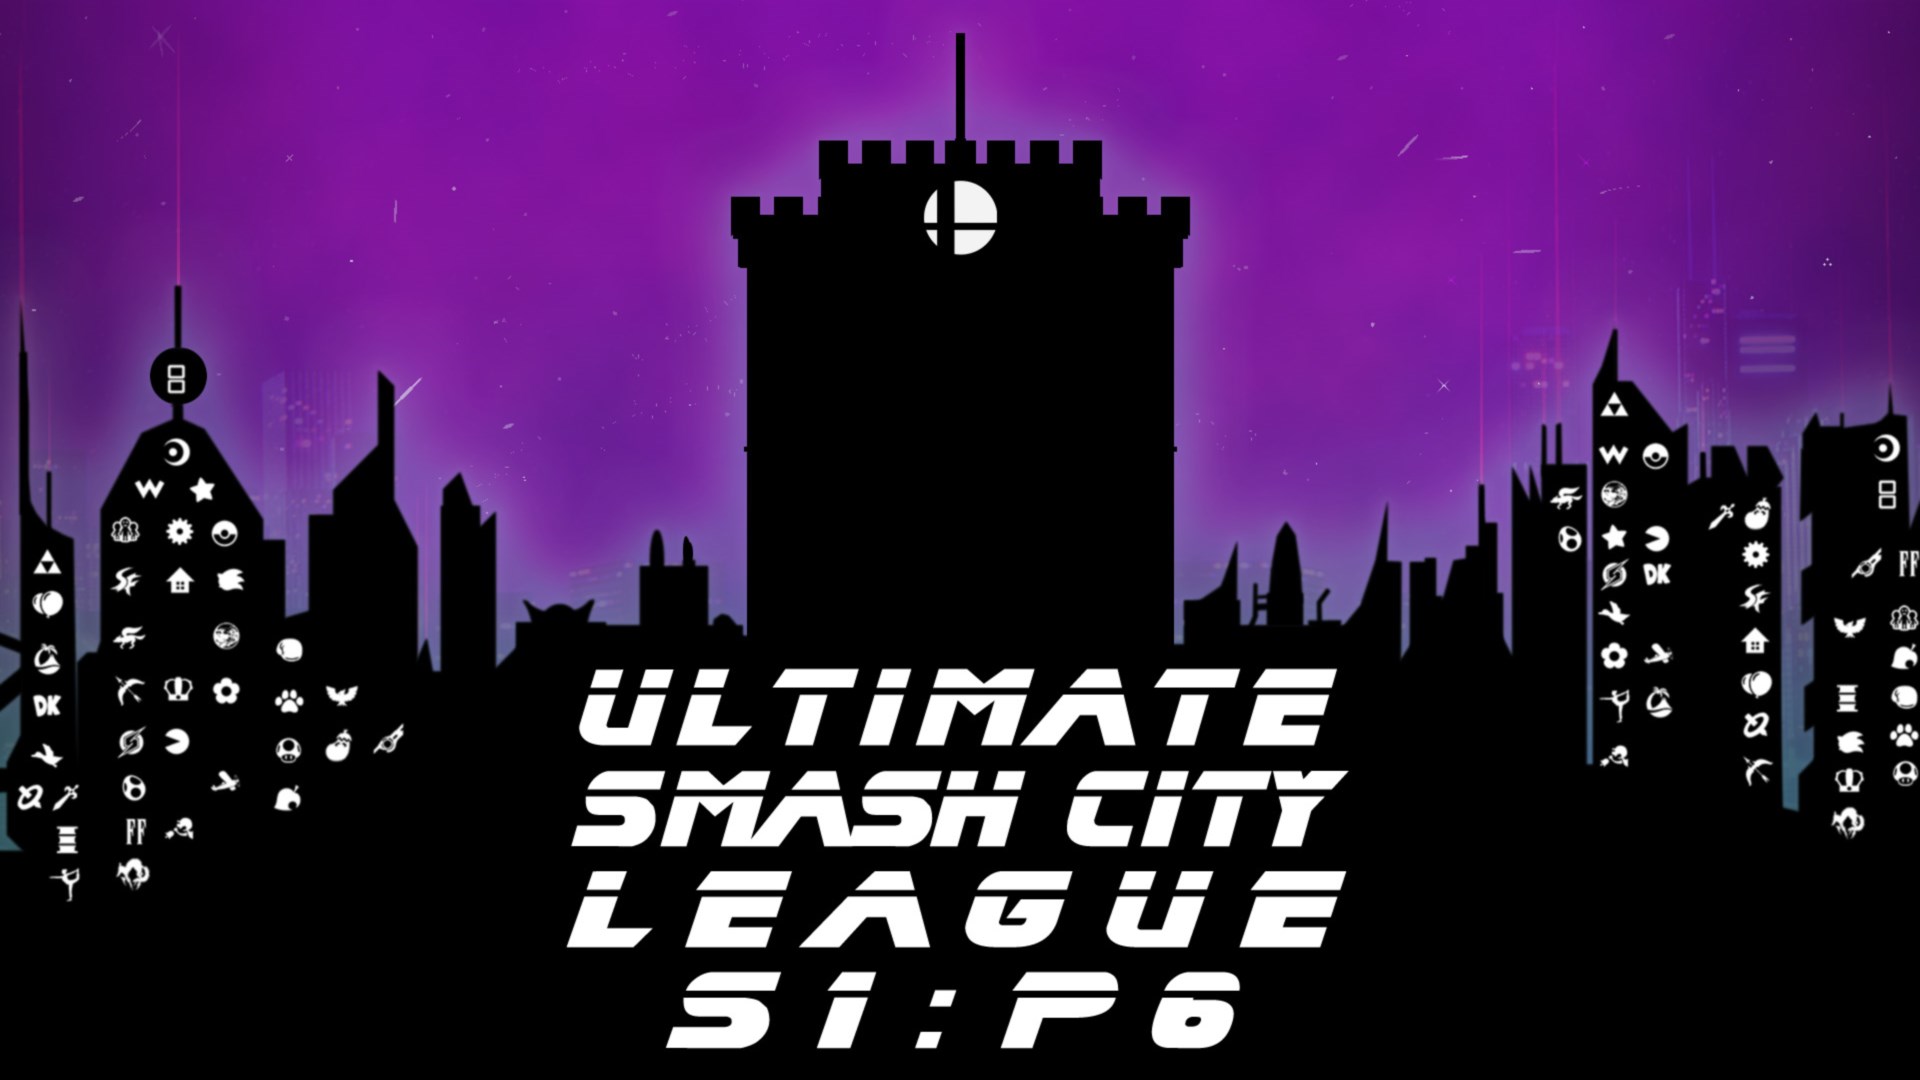 Ultimate Smash City League S1:P6 Θεσσαλονίκη